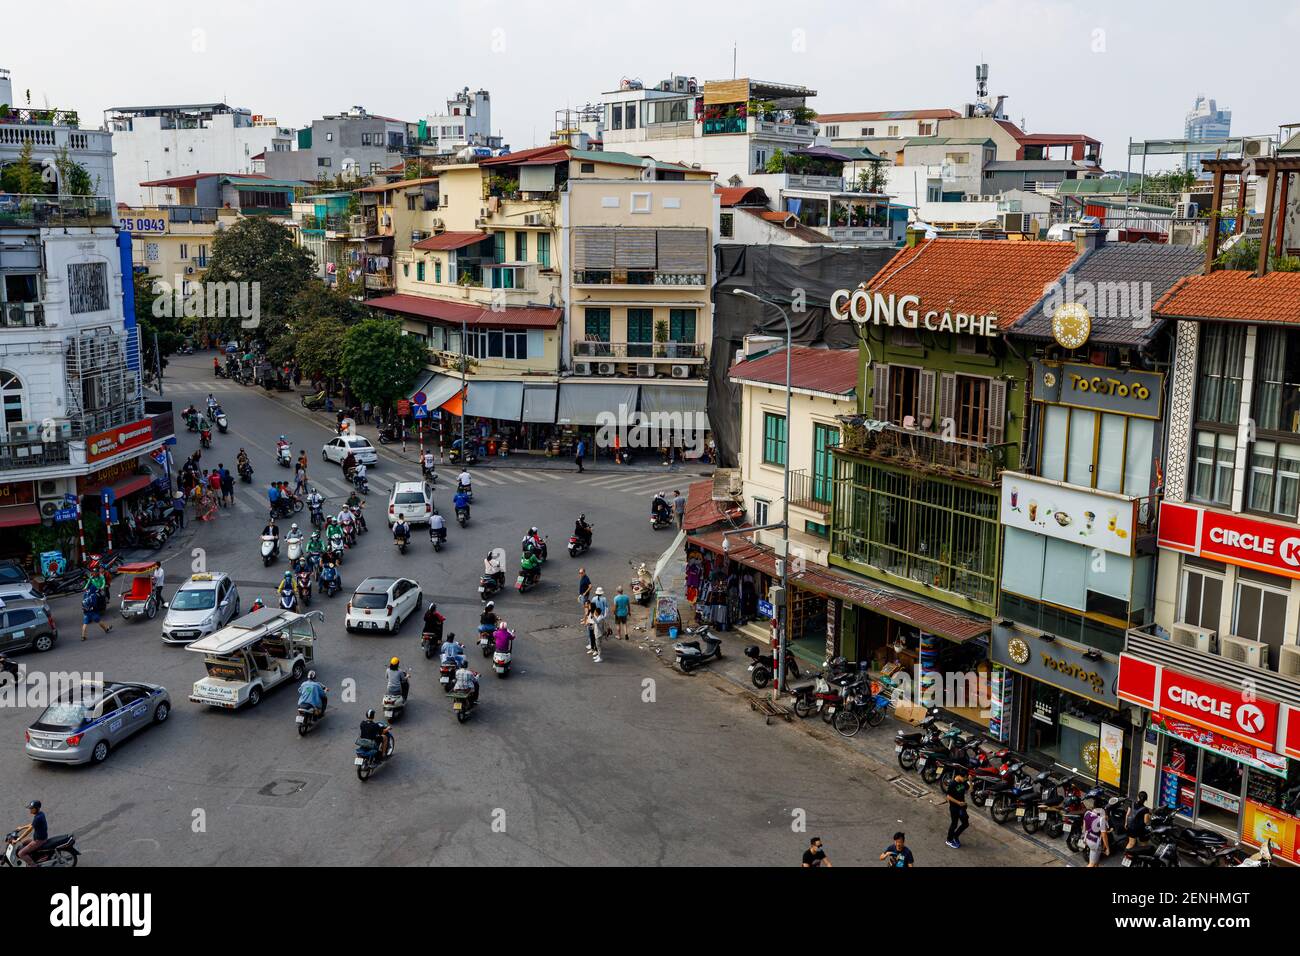 chaos traffic of Hanoi in Vietnam Stock Photo